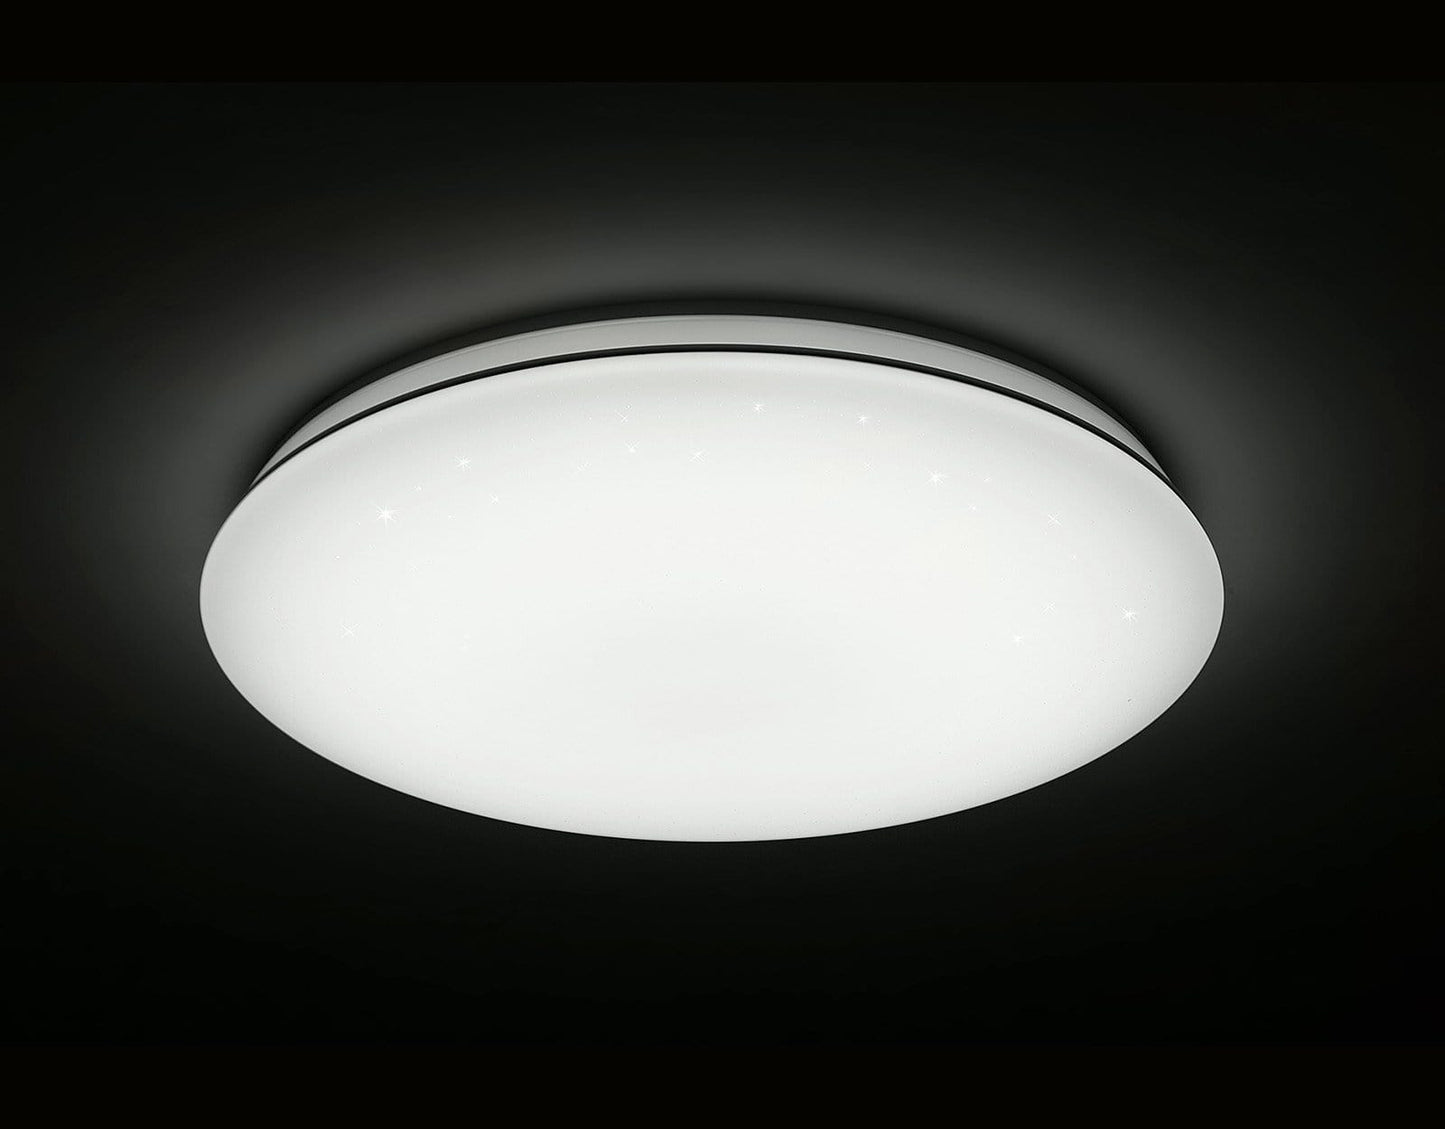 L6 Home Decore DALEN 17inch Smart RC Ceiling Light